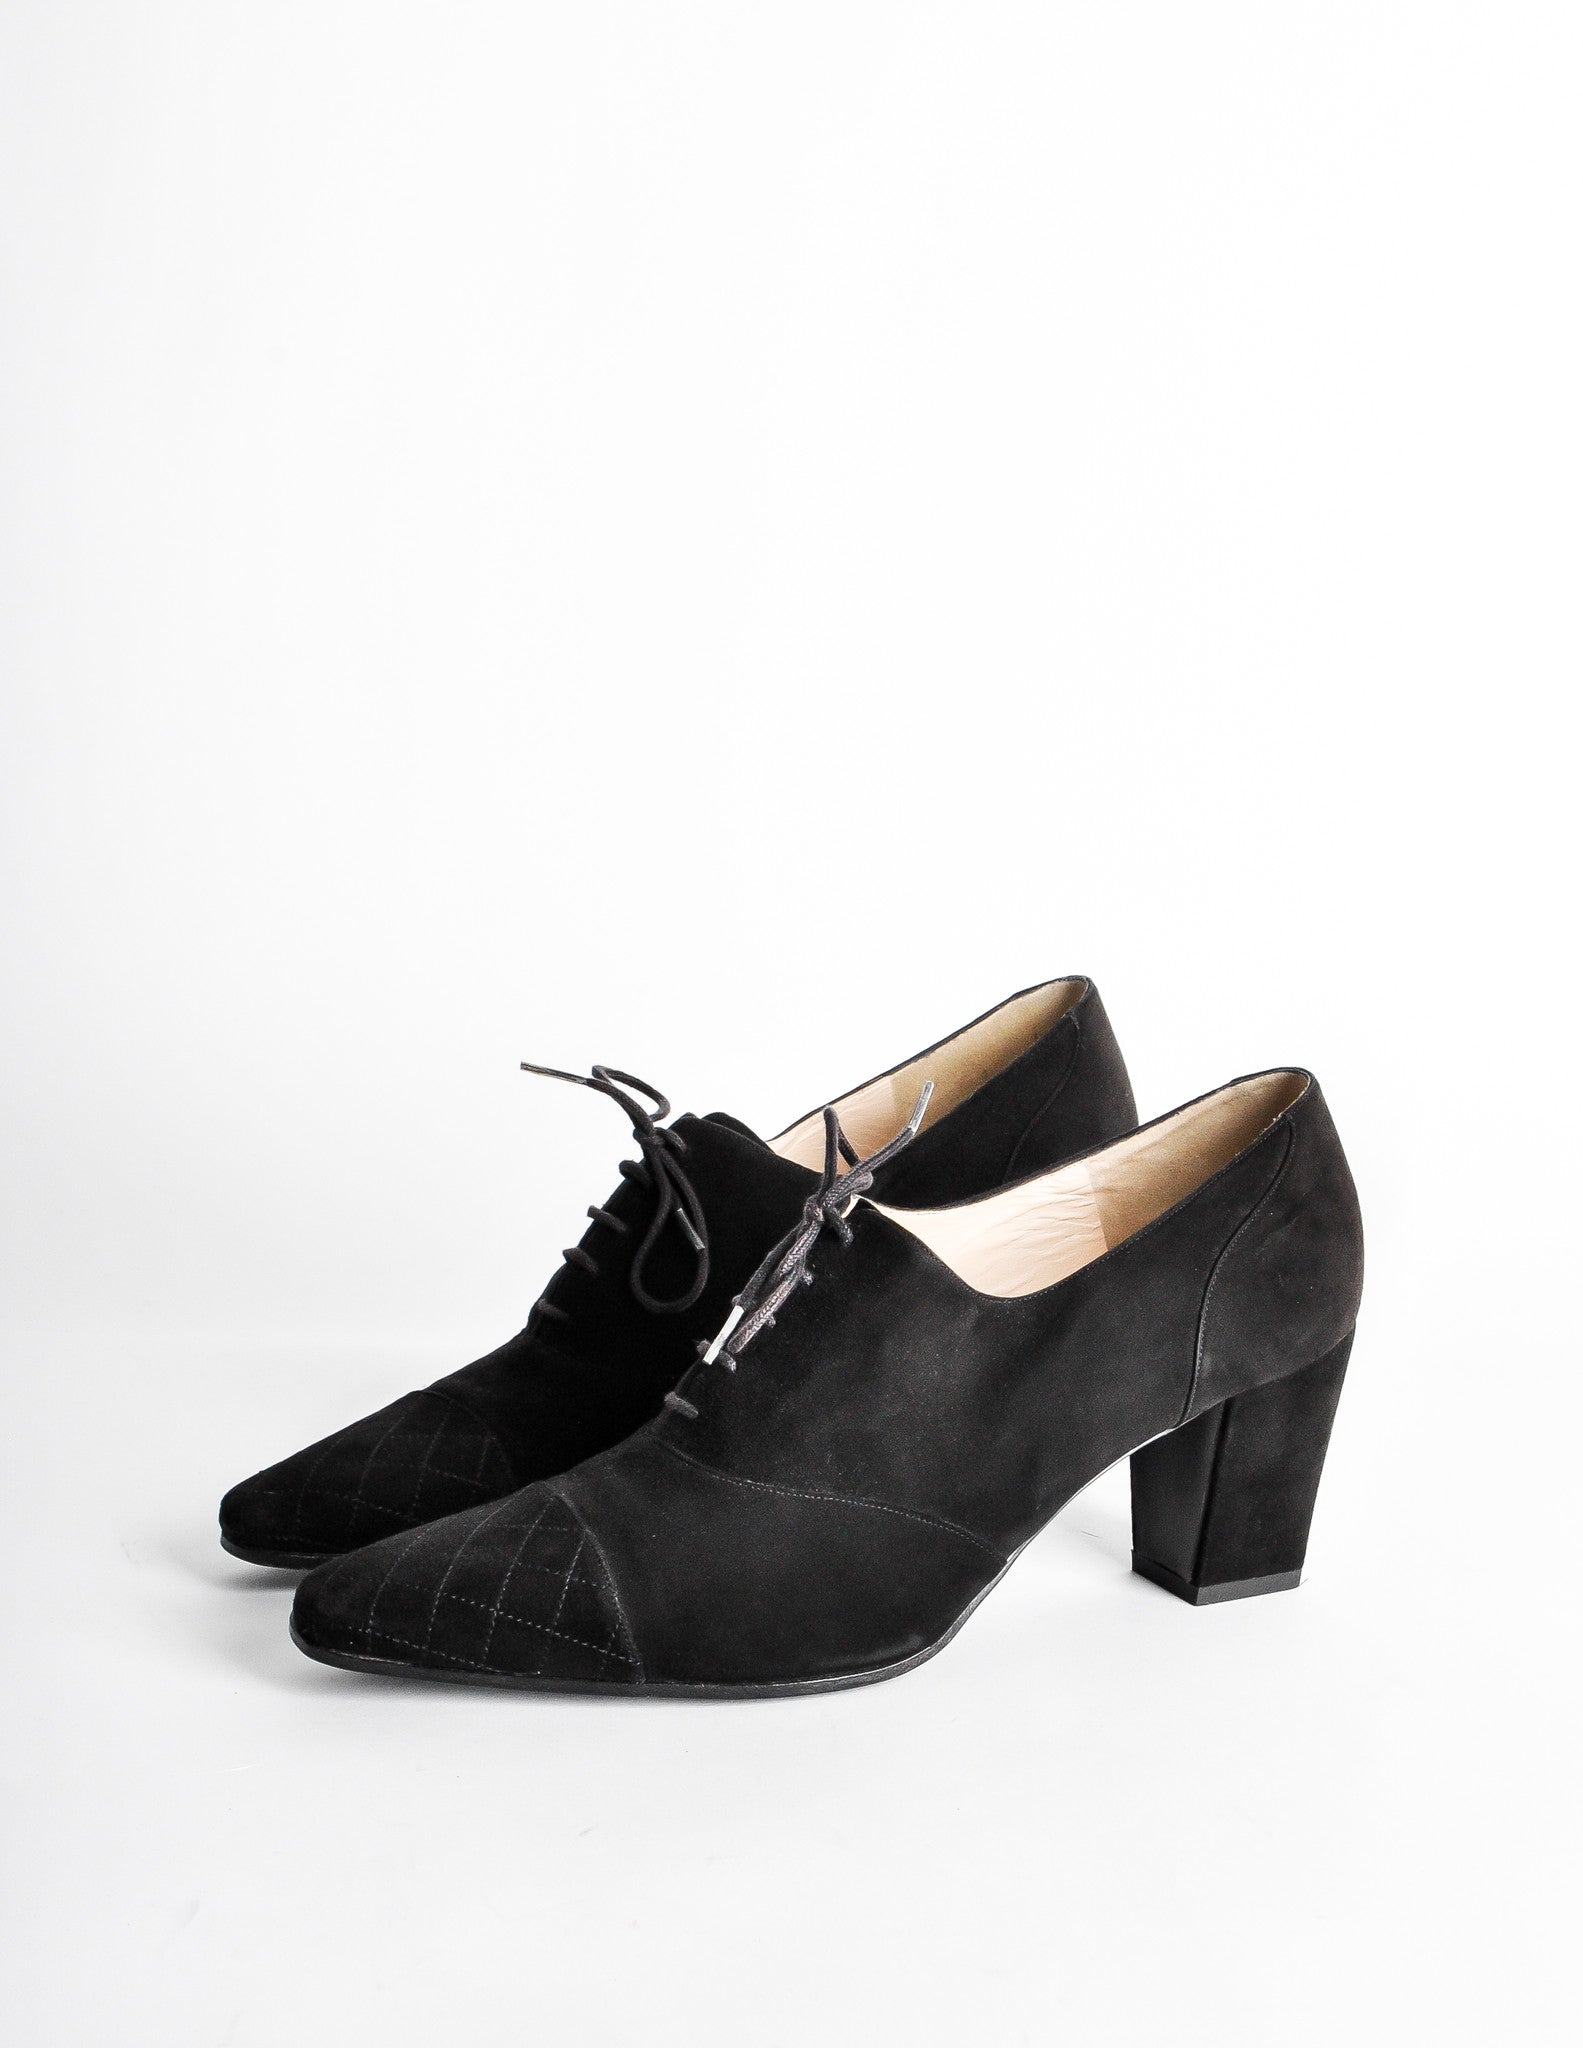 Chanel Vintage Black Suede Oxford Heels 